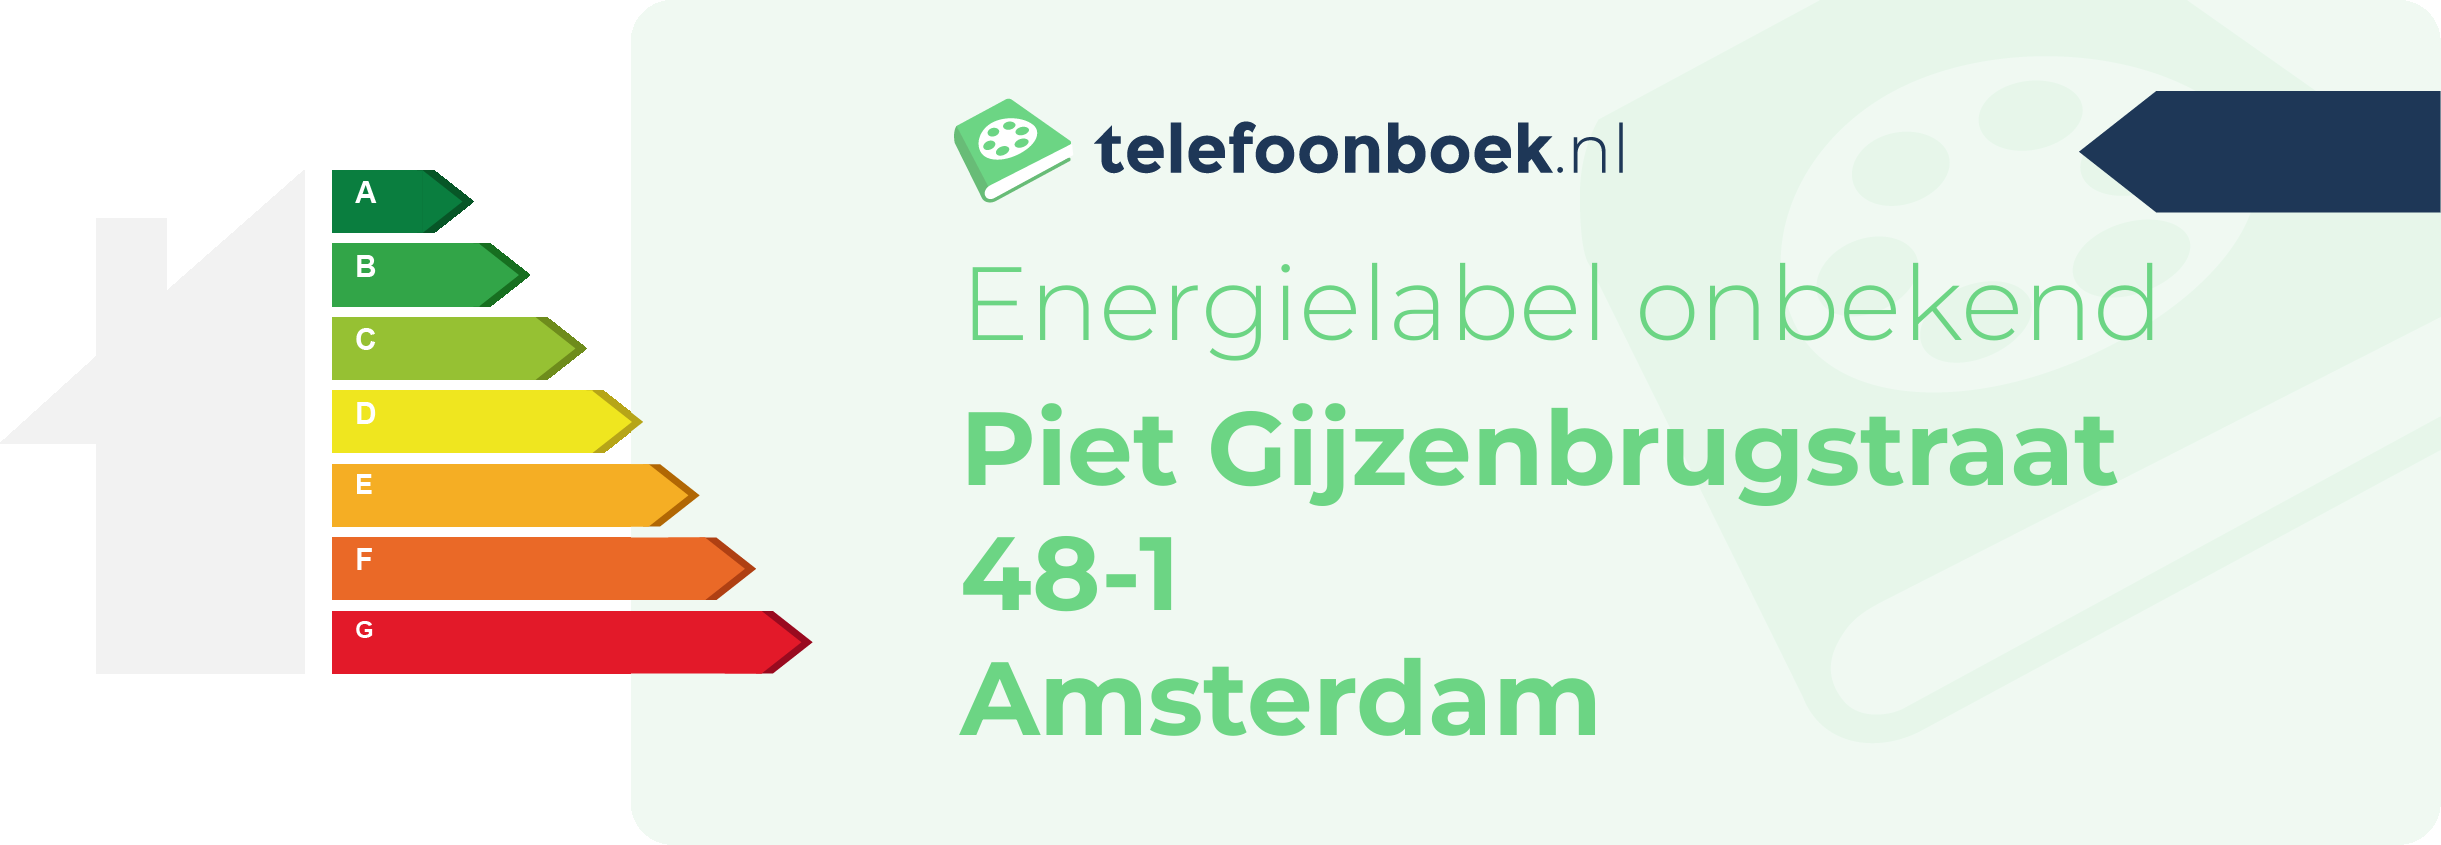 Energielabel Piet Gijzenbrugstraat 48-1 Amsterdam